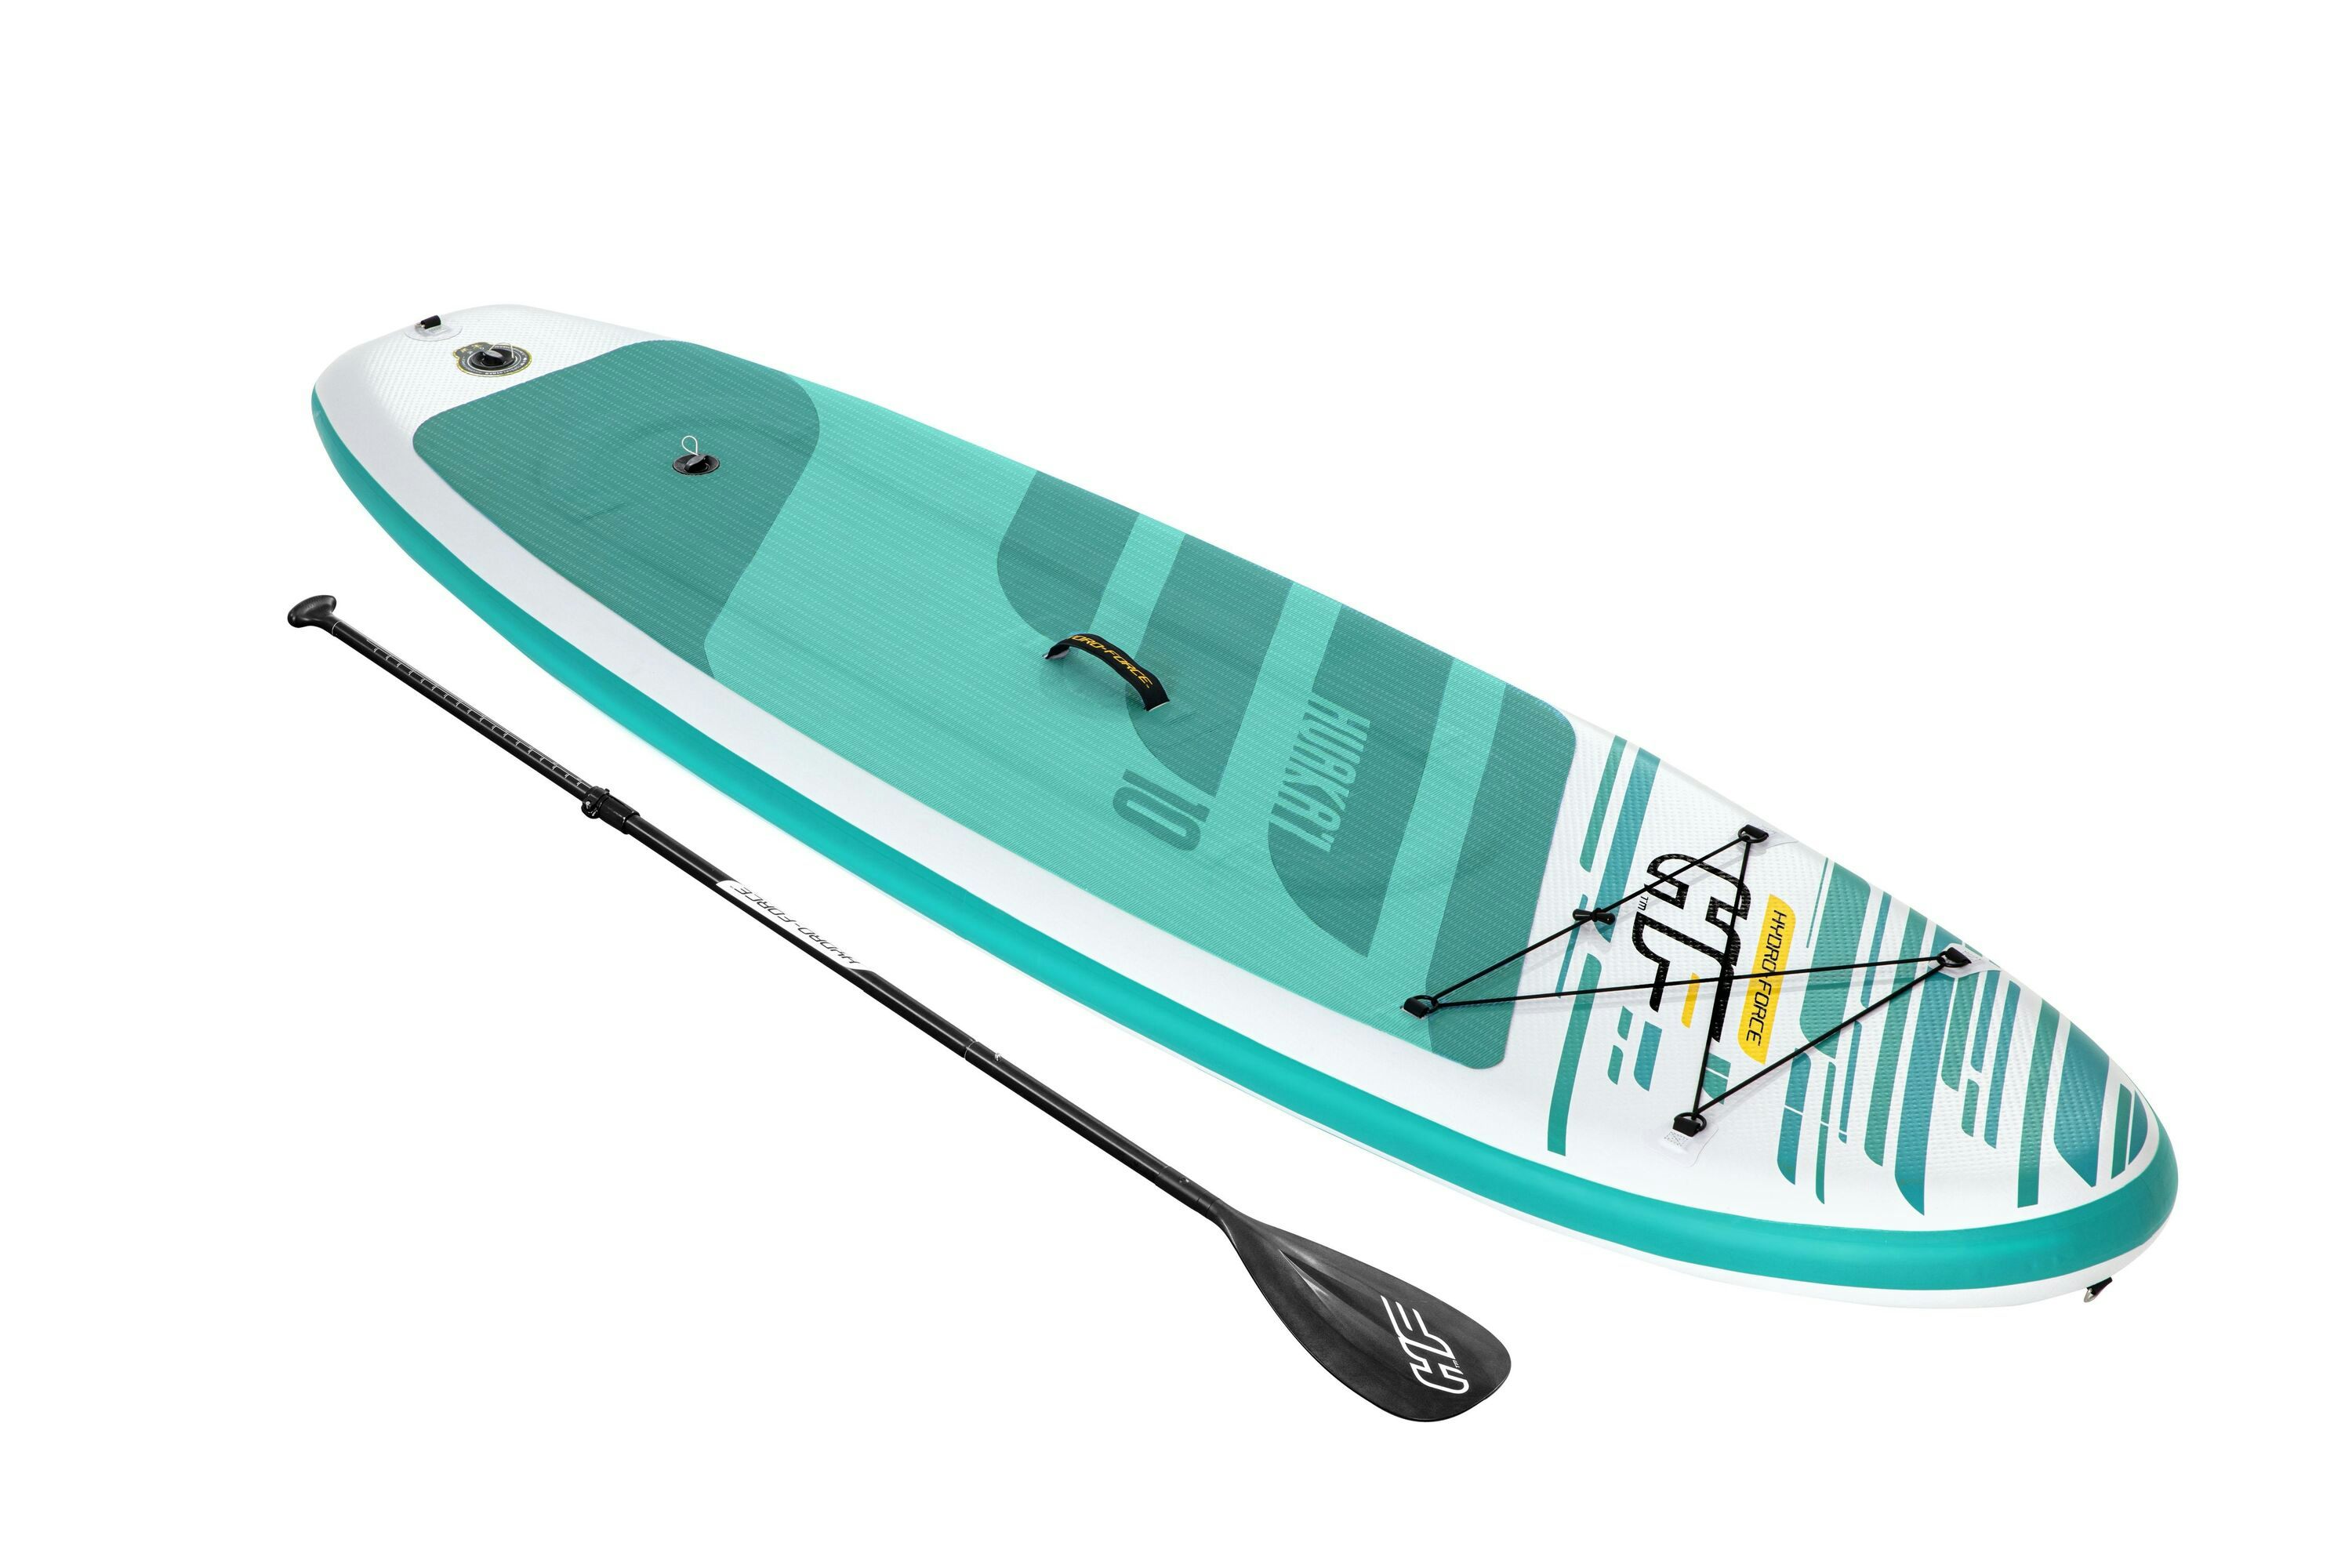 Sports d'eau Paddle SUP gonflable Huaka'i Tech Set Hydro-Force™ 305 x 84 x 12 cm, pompe, sac à dos, leash, pagaie Bestway 1